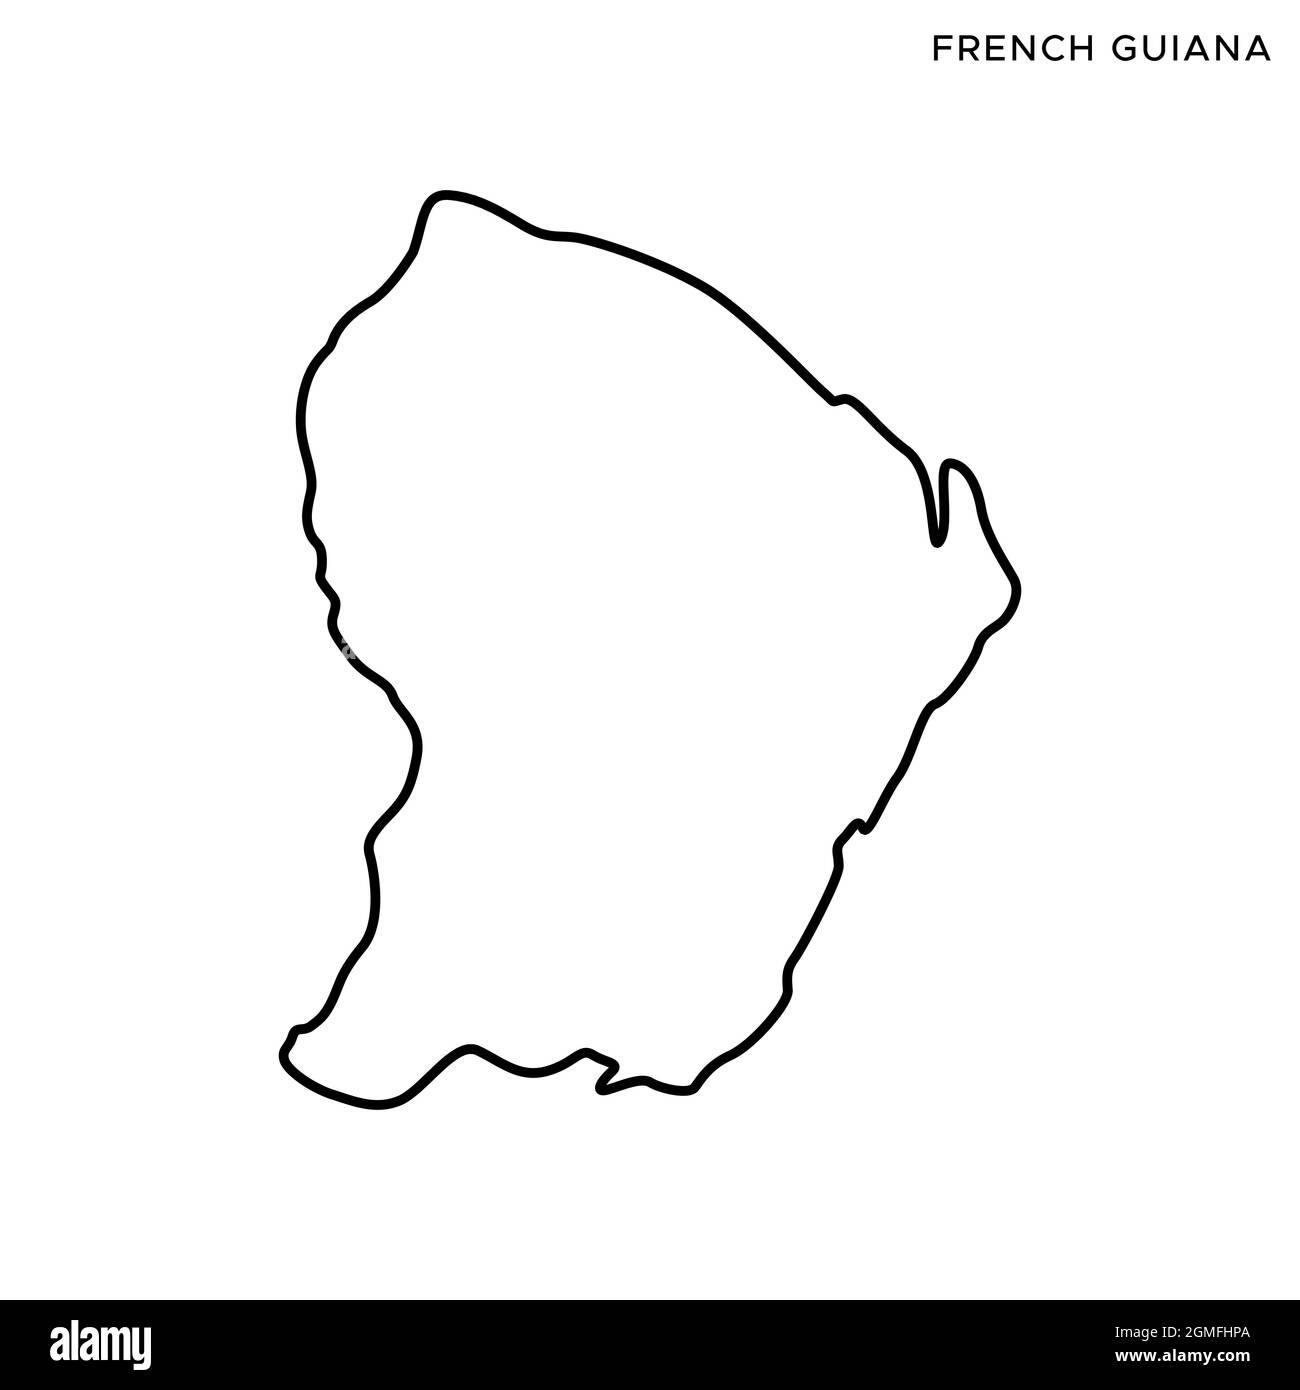 Plan de ligne du modèle de dessin d'illustration du stock vectoriel en Guyane française. Contour modifiable. Vecteur eps 10. Illustration de Vecteur